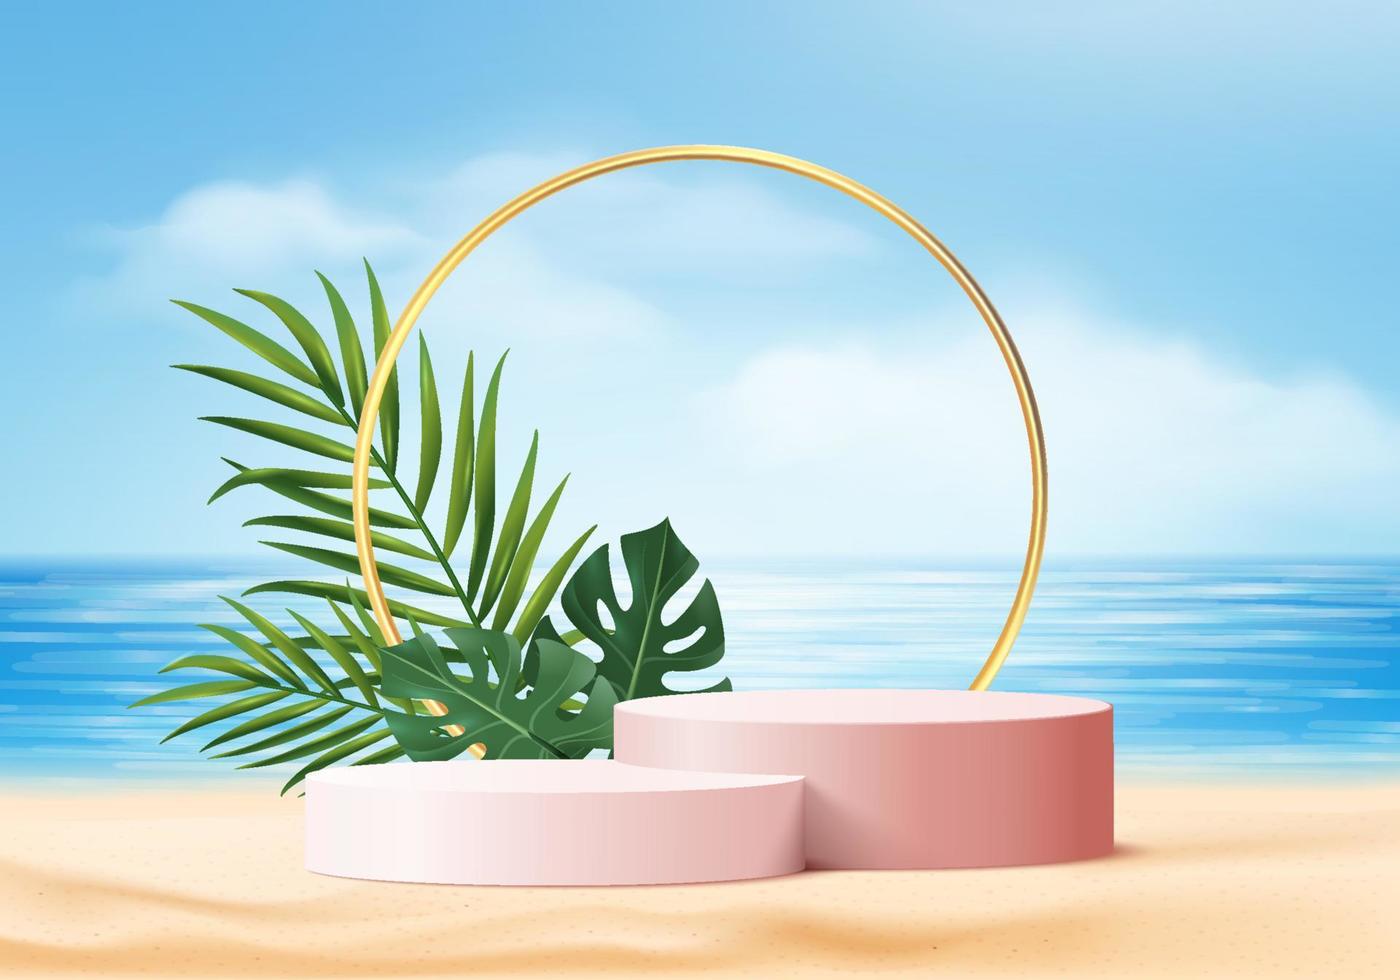 zomer achtergrond 3D-product display platform scène met palmbladeren platform. sky cloud zomer achtergrond vector 3D render op de oceaan display. podium op de displaystandaard voor cosmetische producten op het zandstrand